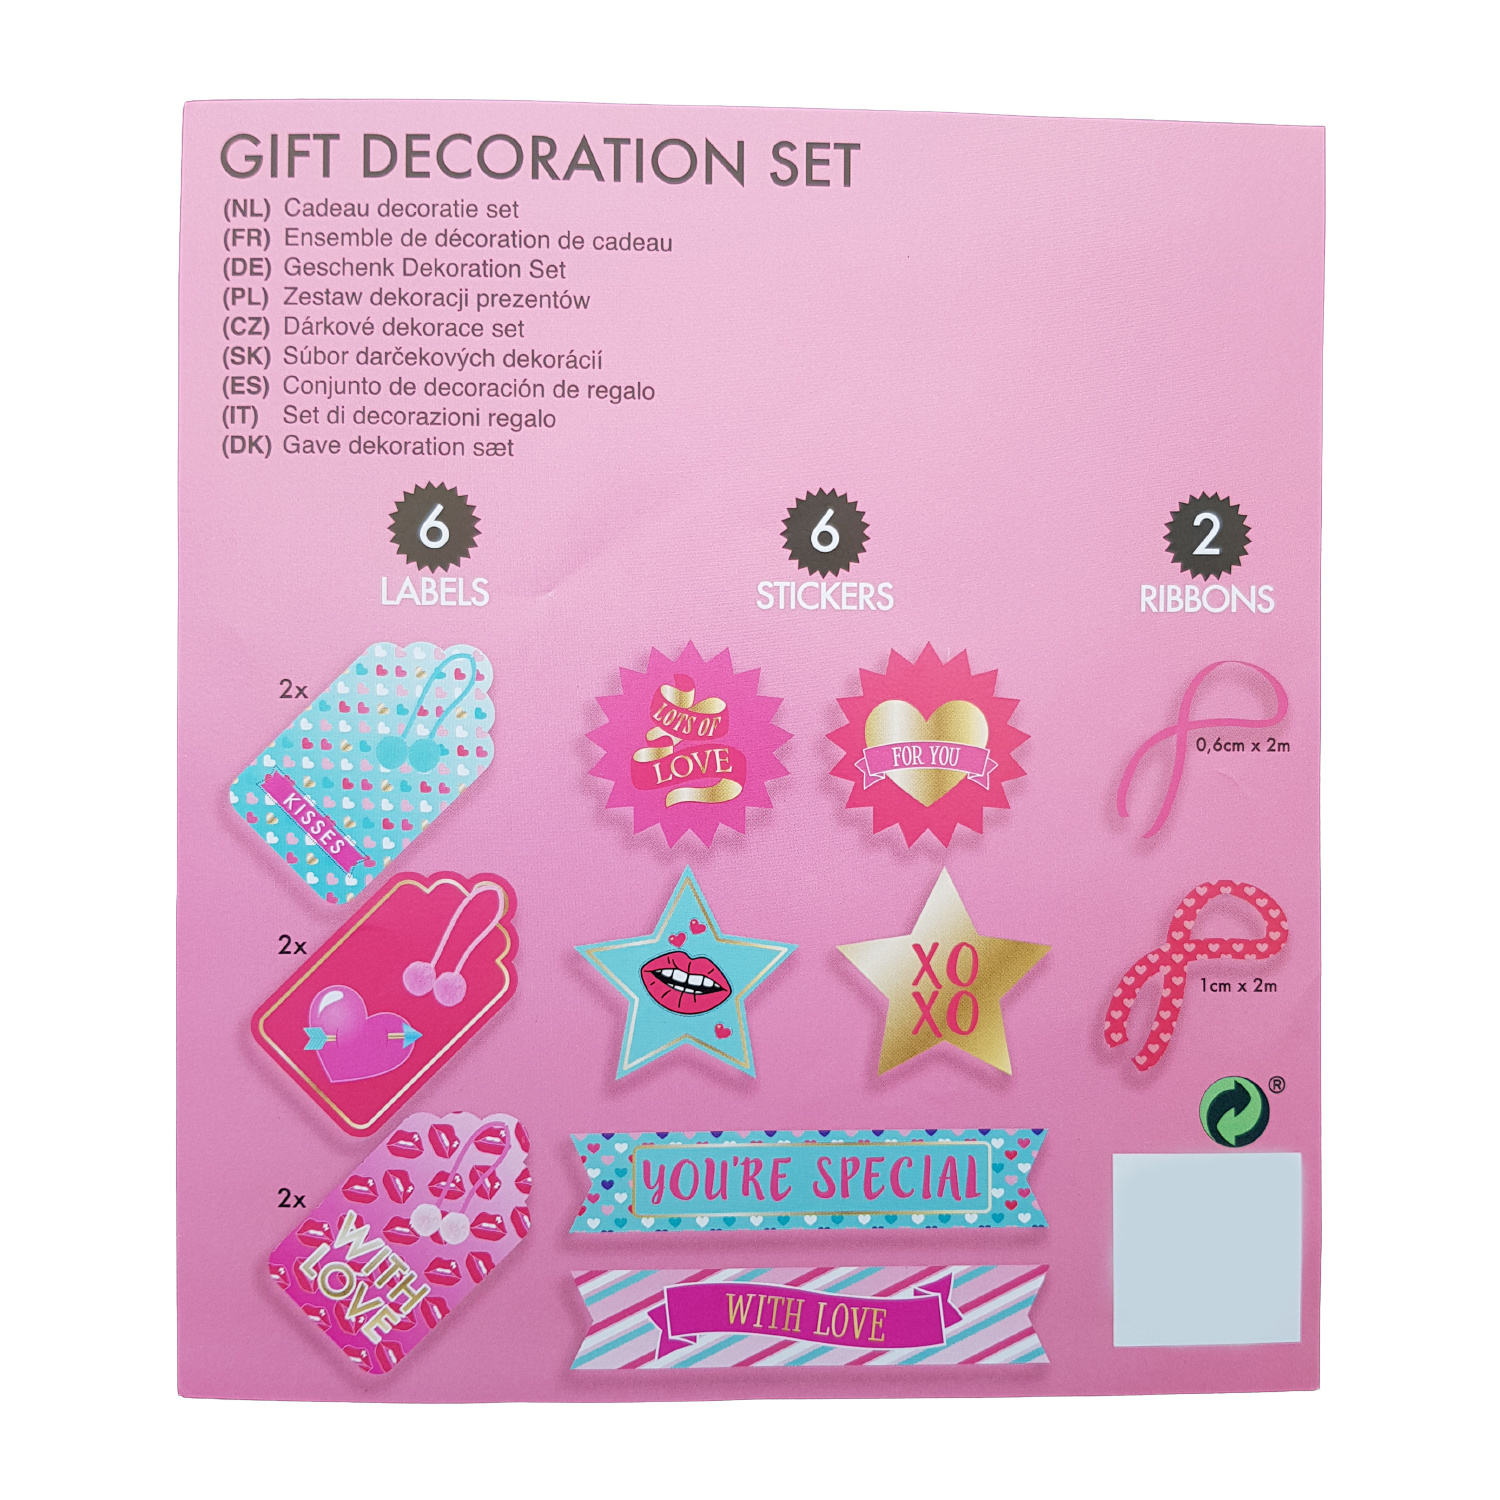 Labels cadeau decoratie set “you're special” - Voor uw feestartikelen